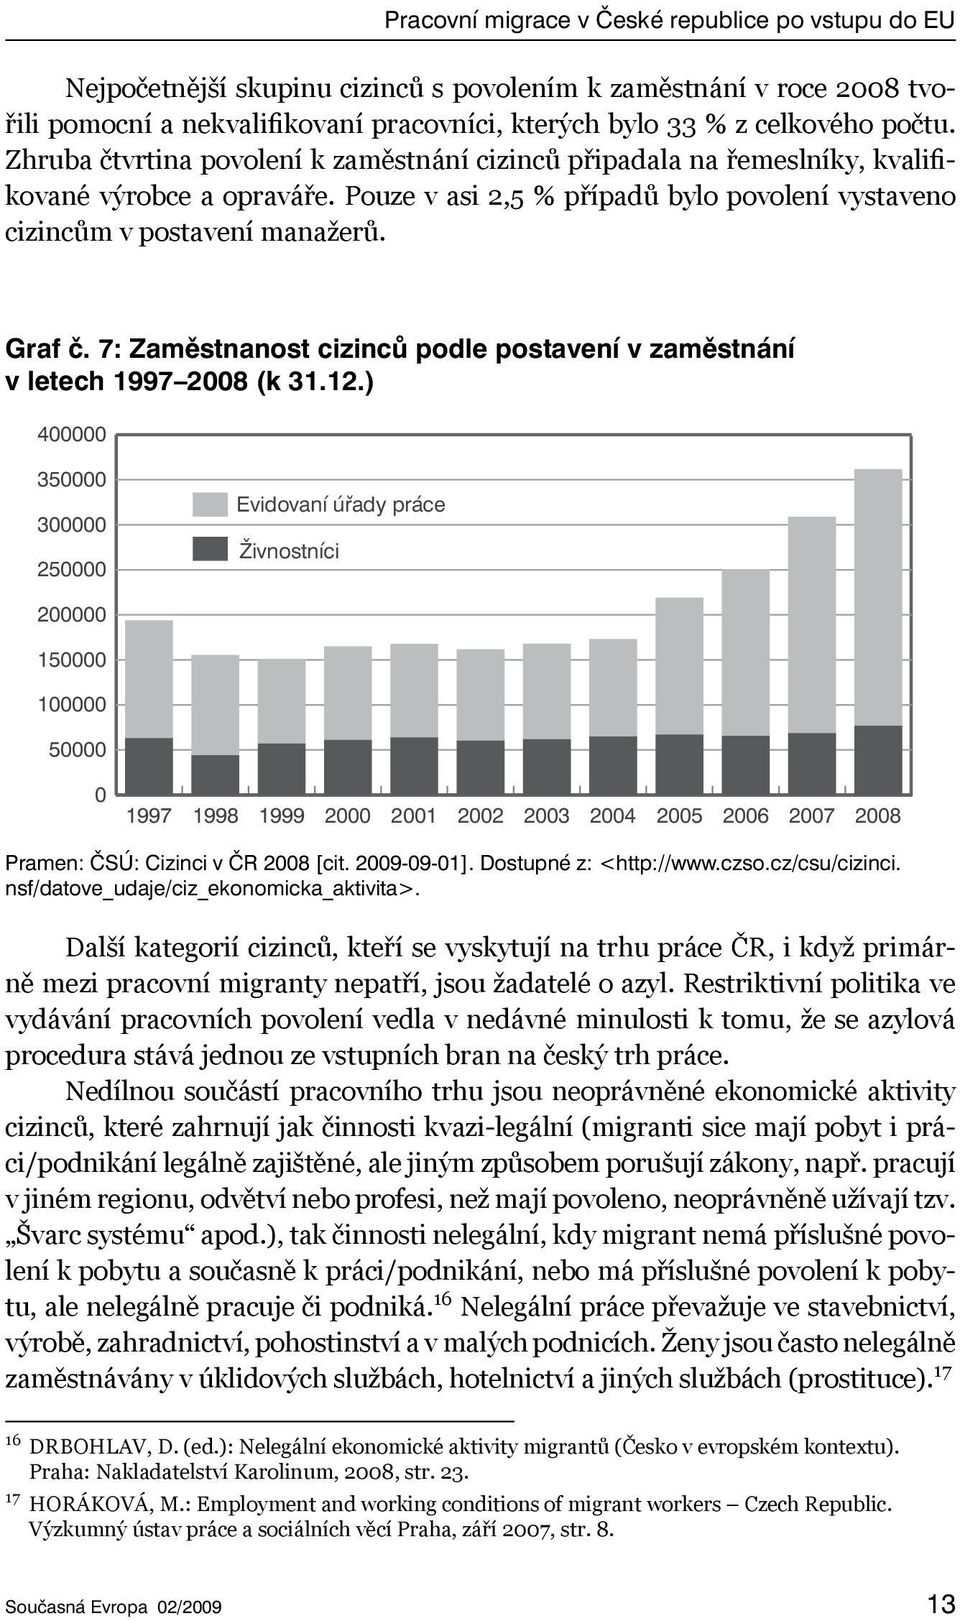 7: Zaměstnanost cizinců podle postavení v zaměstnání v letech 1997 2008 (k 31.12.) Pramen: ČSÚ: Cizinci v ČR 2008 [cit. 2009-09-01]. Dostupné z: <http://www.czso.cz/csu/cizinci.